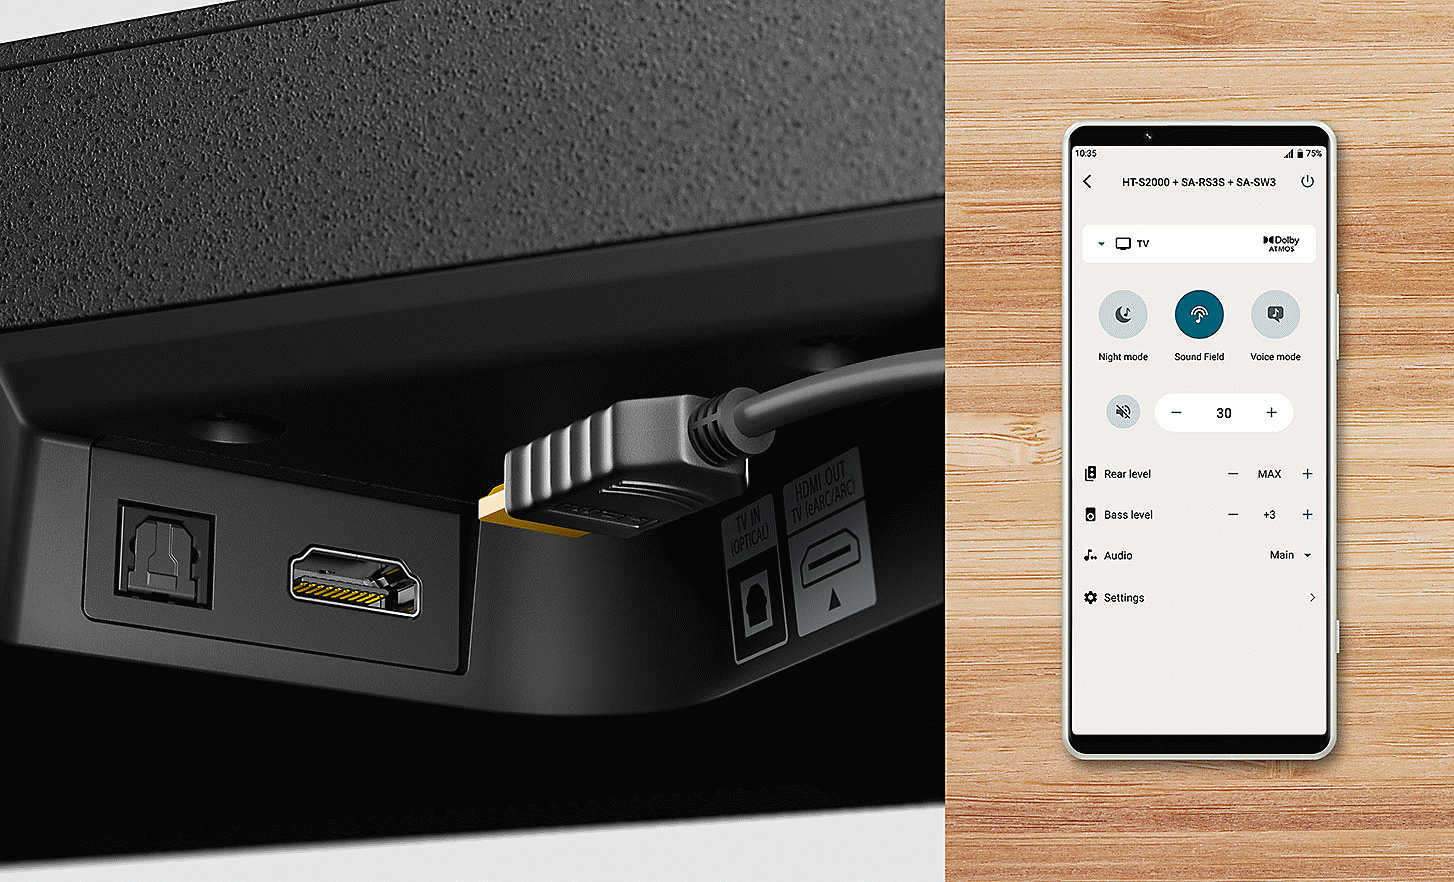 Nahaufnahme des HDMI-Anschlusses der HT-S2000 und eines HDMI-Kabels, mit einem Bild eines Mobiltelefons, das die Einstellungen anzeigt